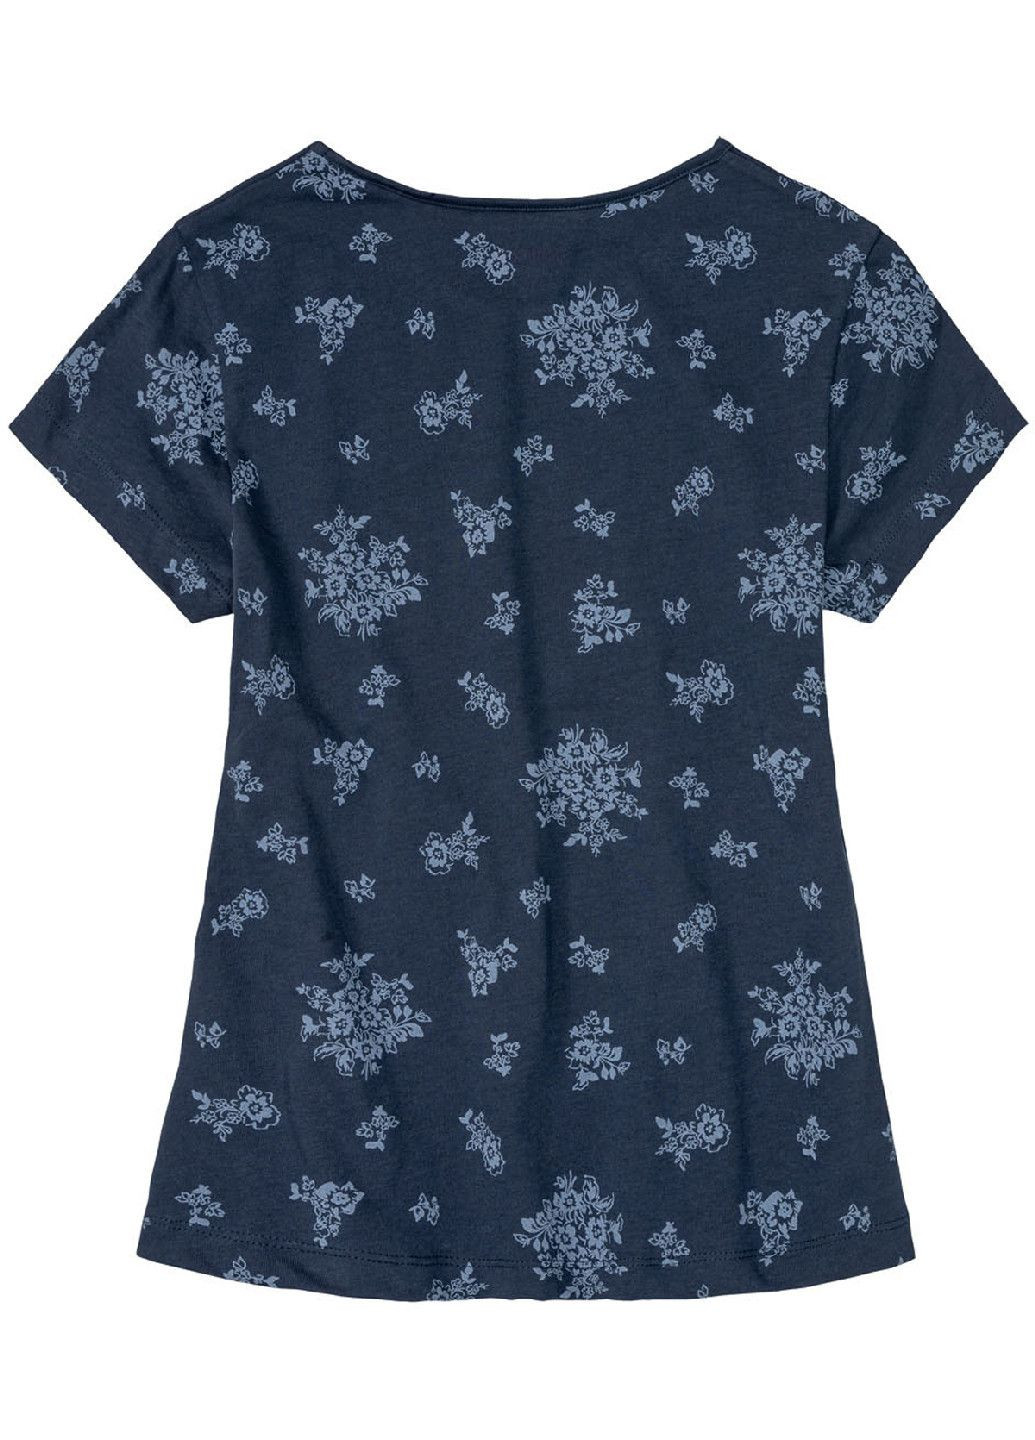 Темно-синяя пижама (футболка и шорты) для девочки 382217 Pepperts